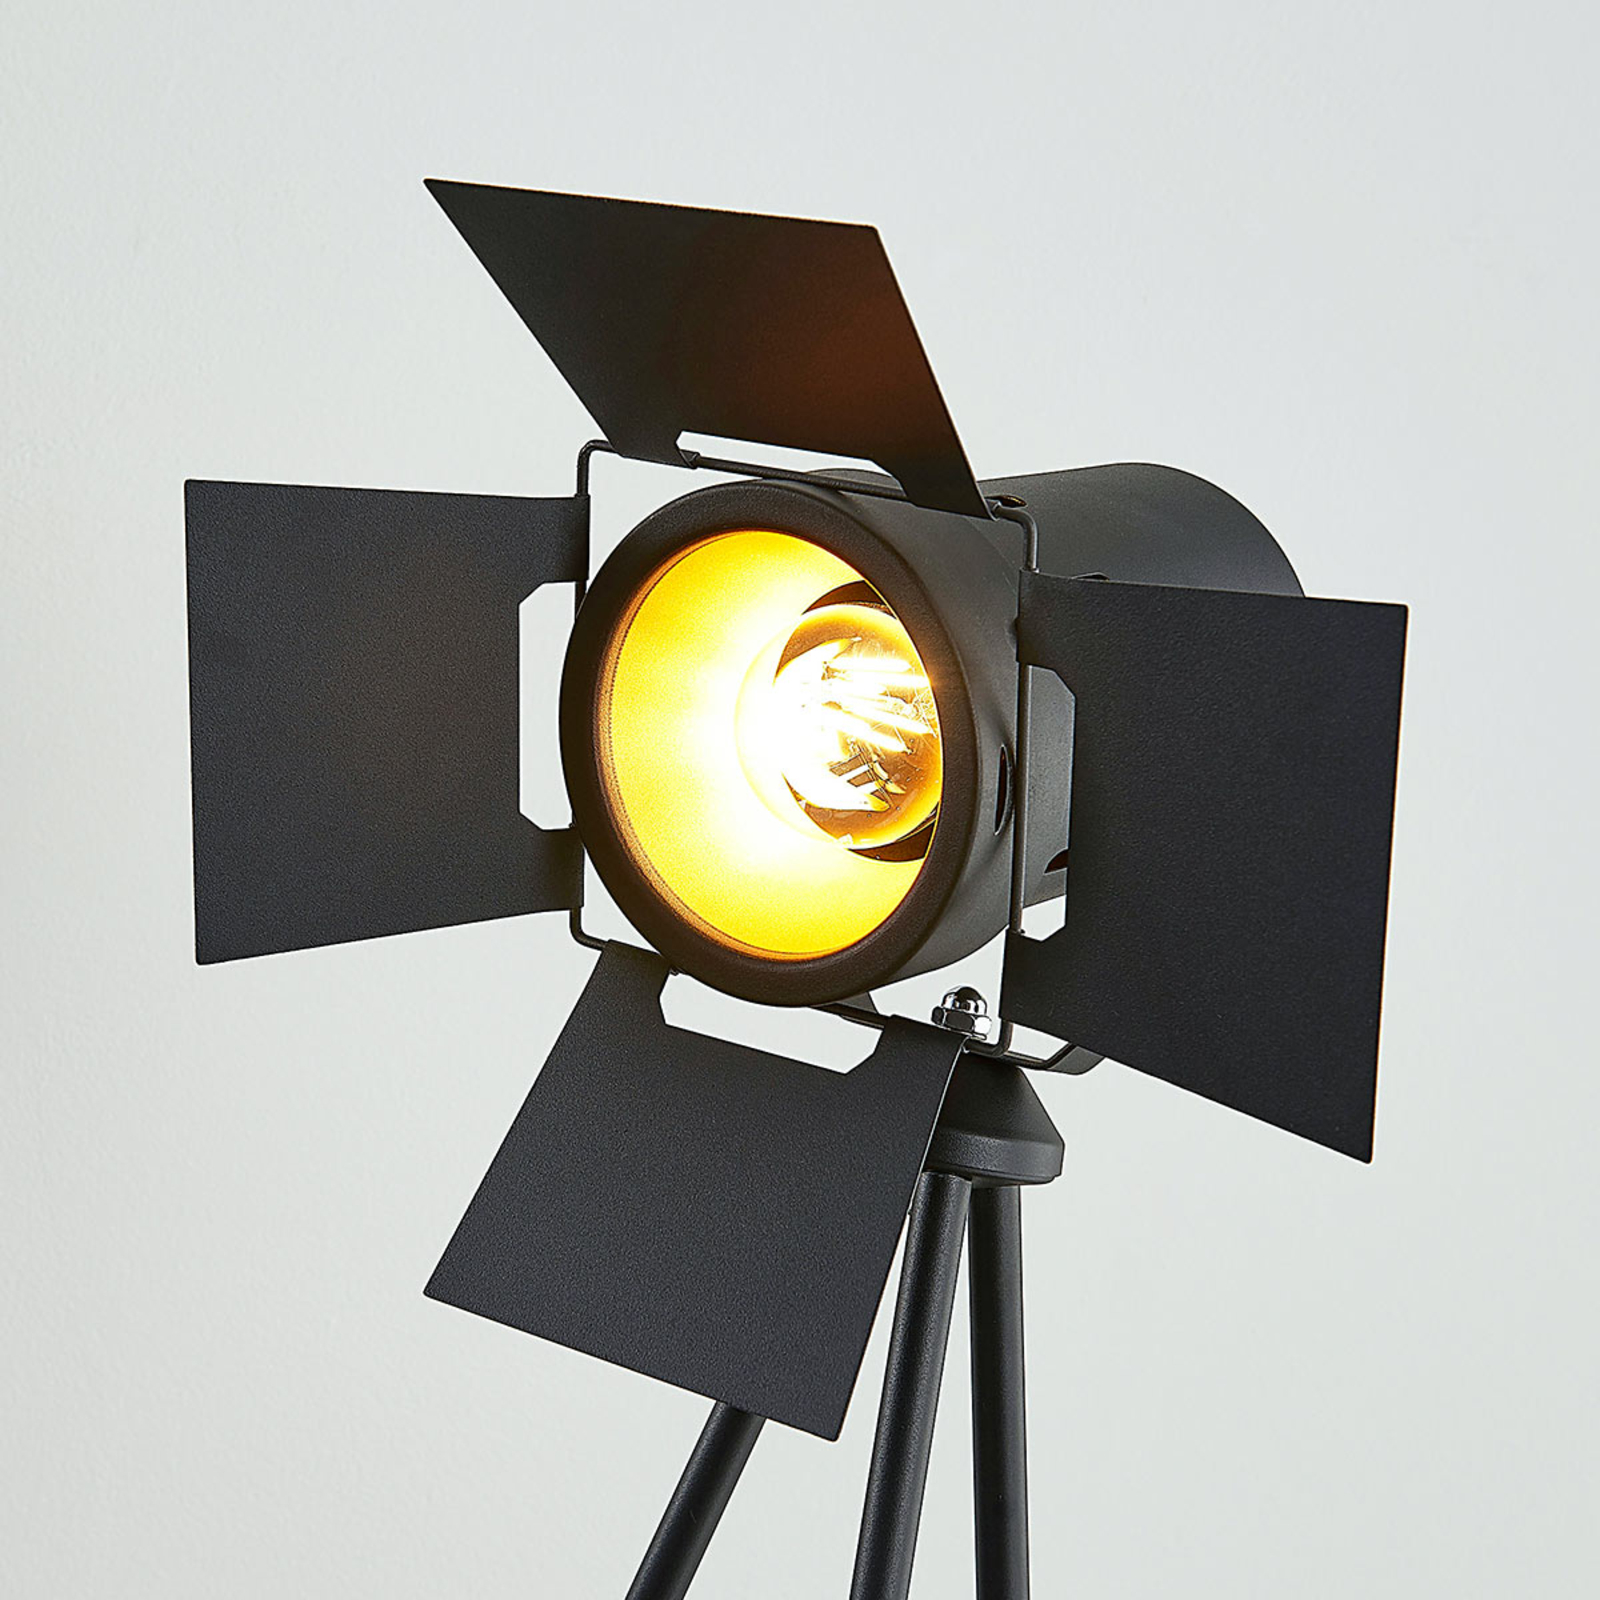 Trójnożna lampa stojąca Devon w kolorze czarnym